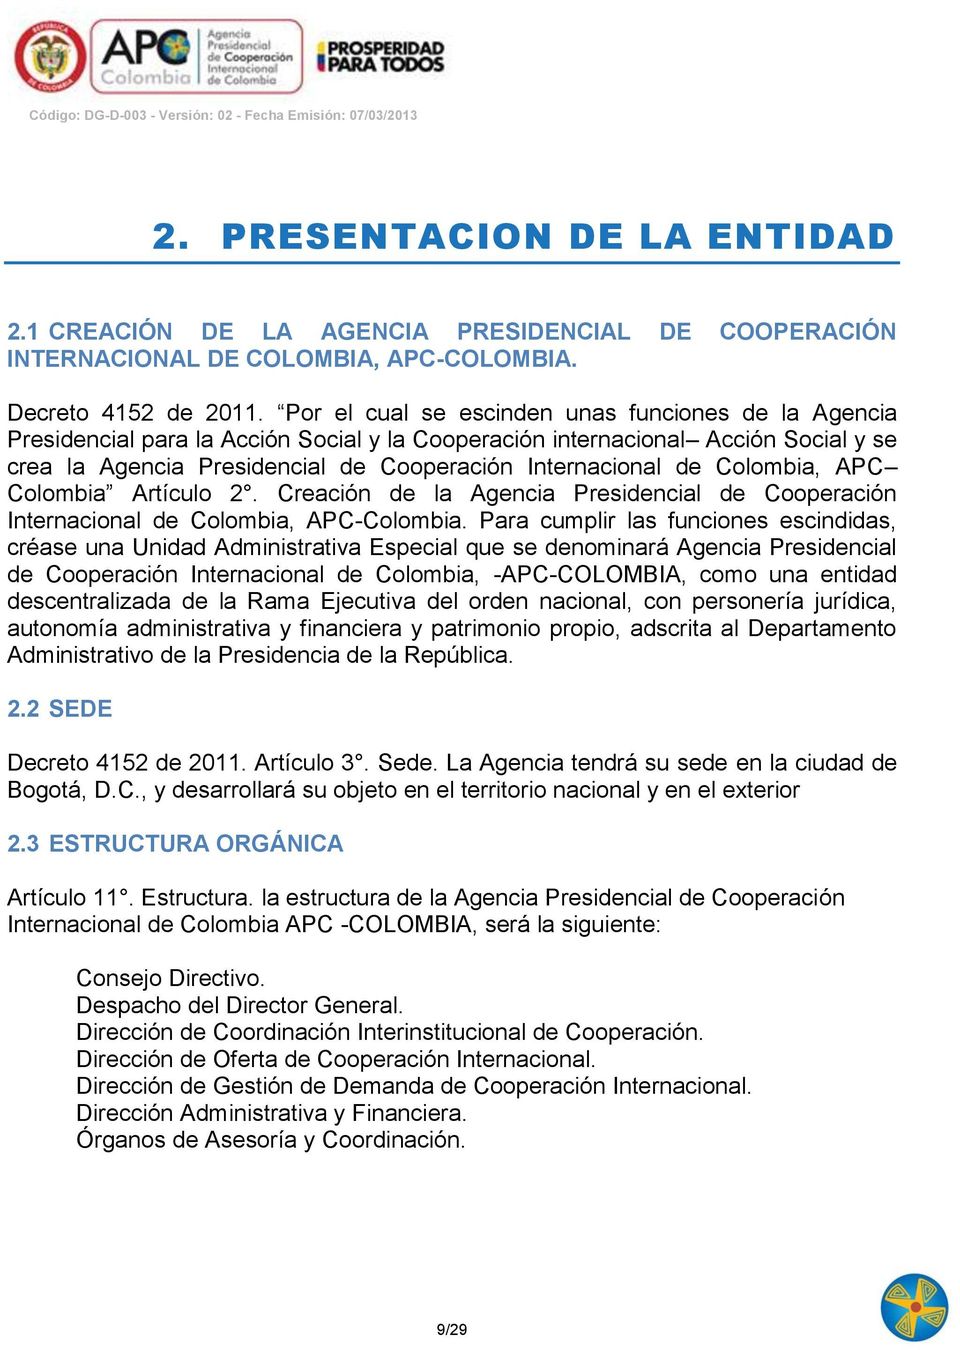 Colombia, APC Colombia Artículo 2. Creación de la Agencia Presidencial de Cooperación Internacional de Colombia, APC-Colombia.